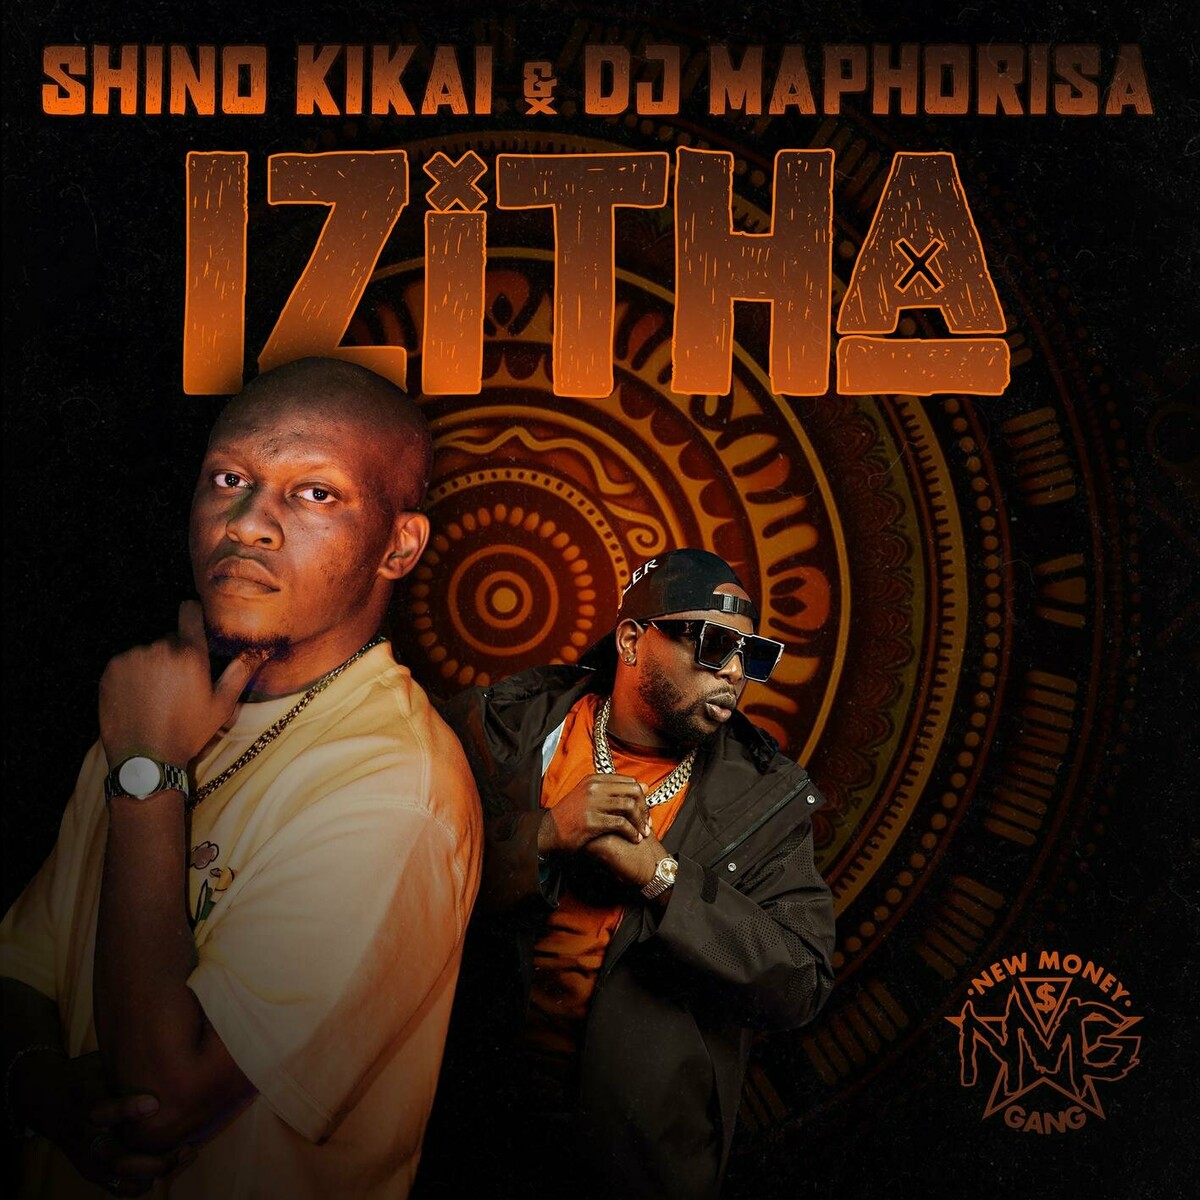 Shino Kikai & DJ Maphorisa – Ngamanzi ft. ShaunMusiq, Xduppy & Tman Xpress